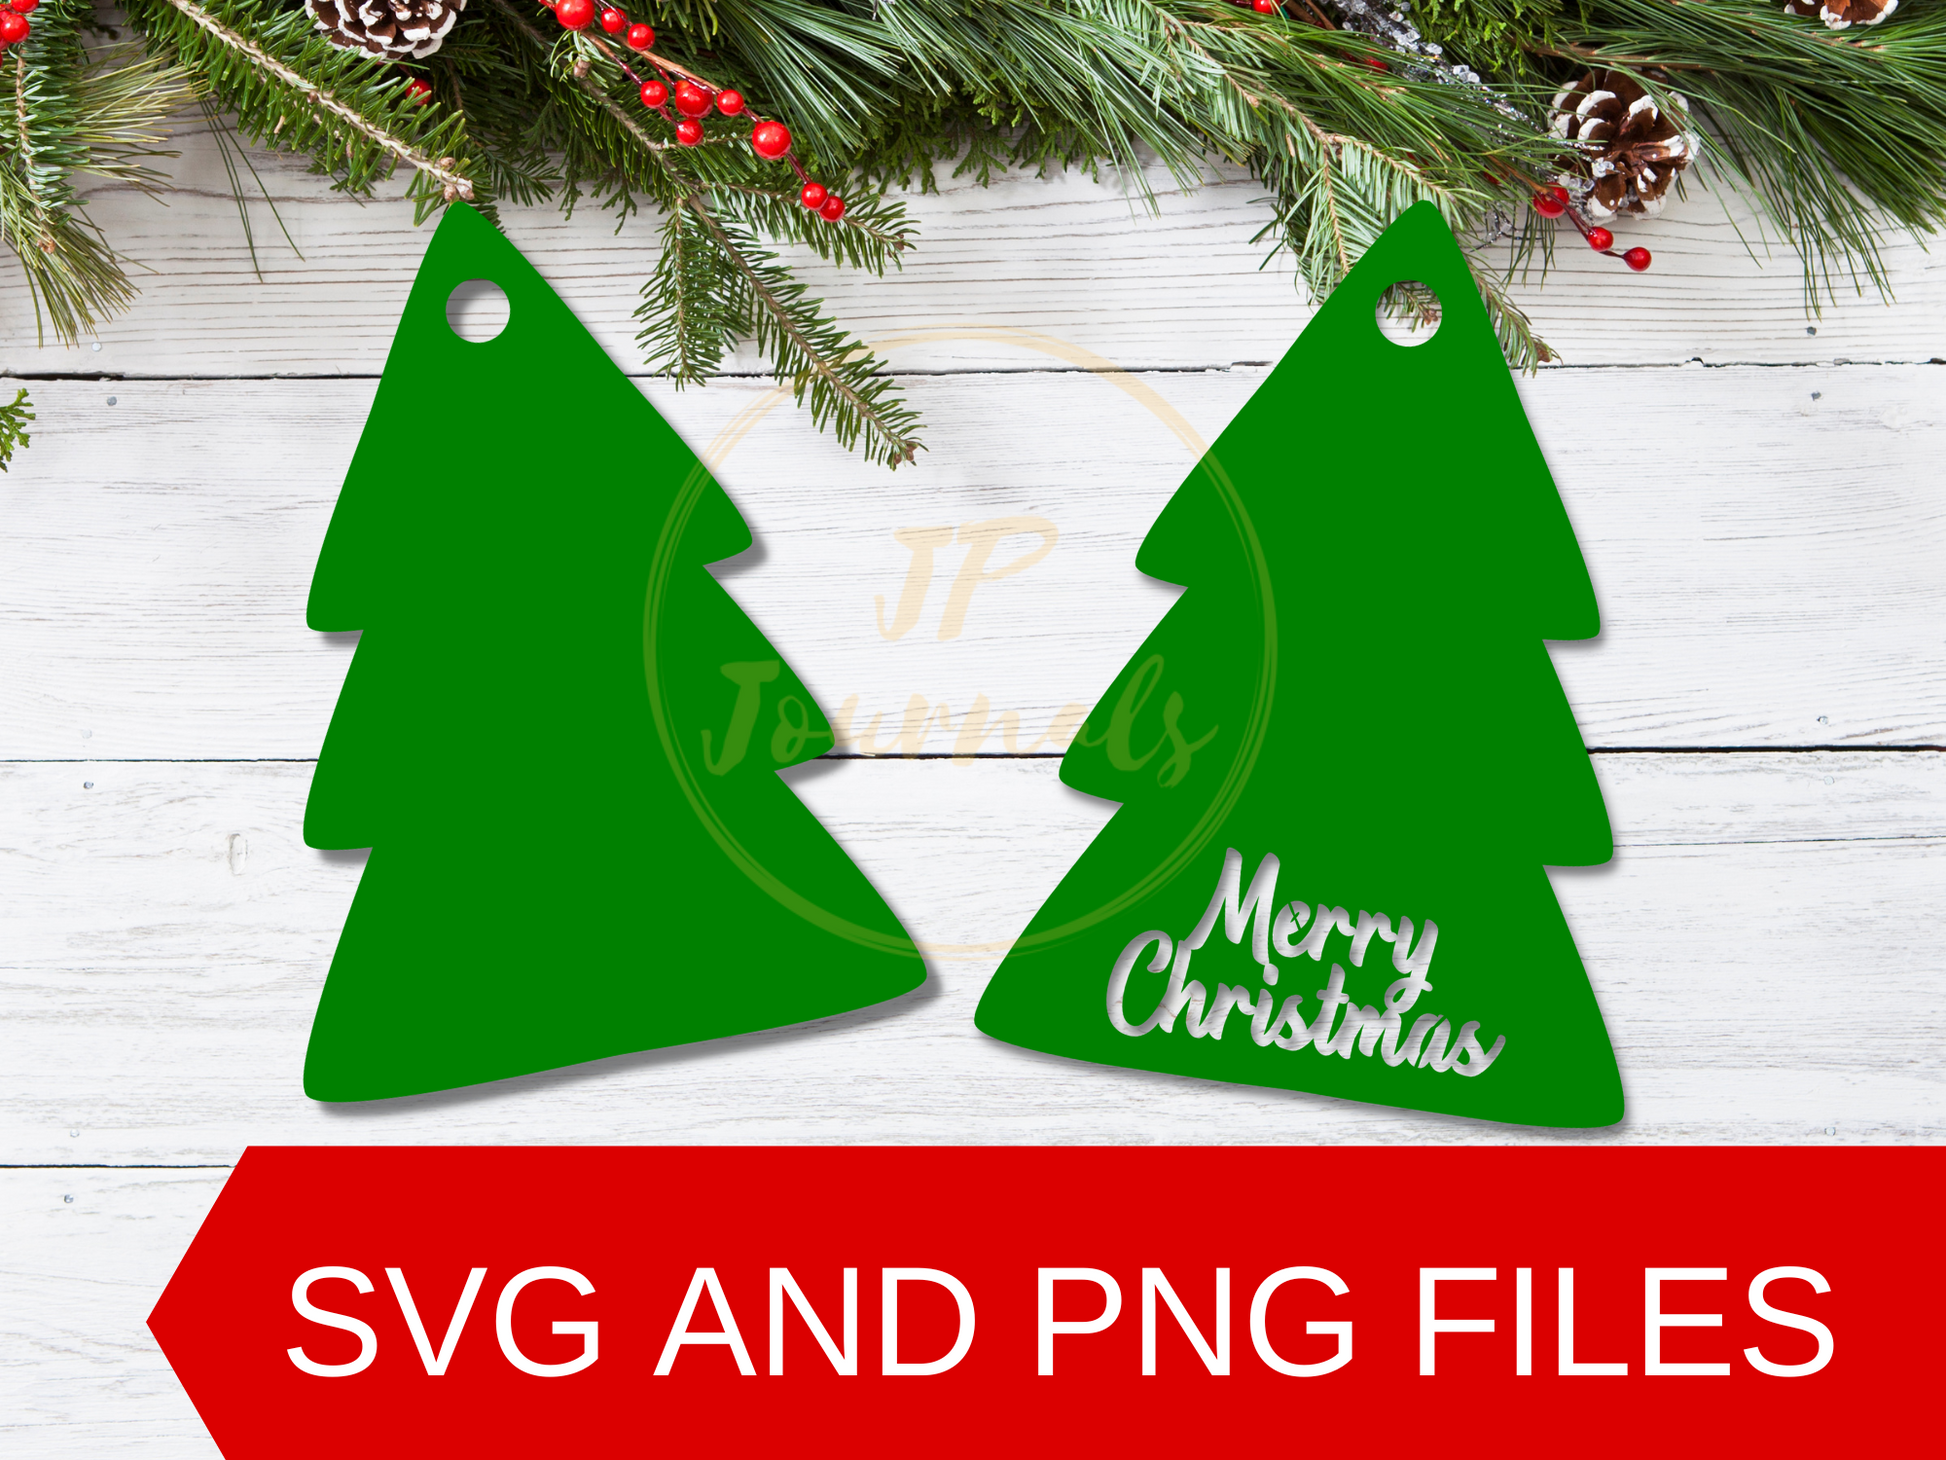 Christmas Pine Tree Tags Template, Christmas Gift Tag SVG, Pine Tree SVG